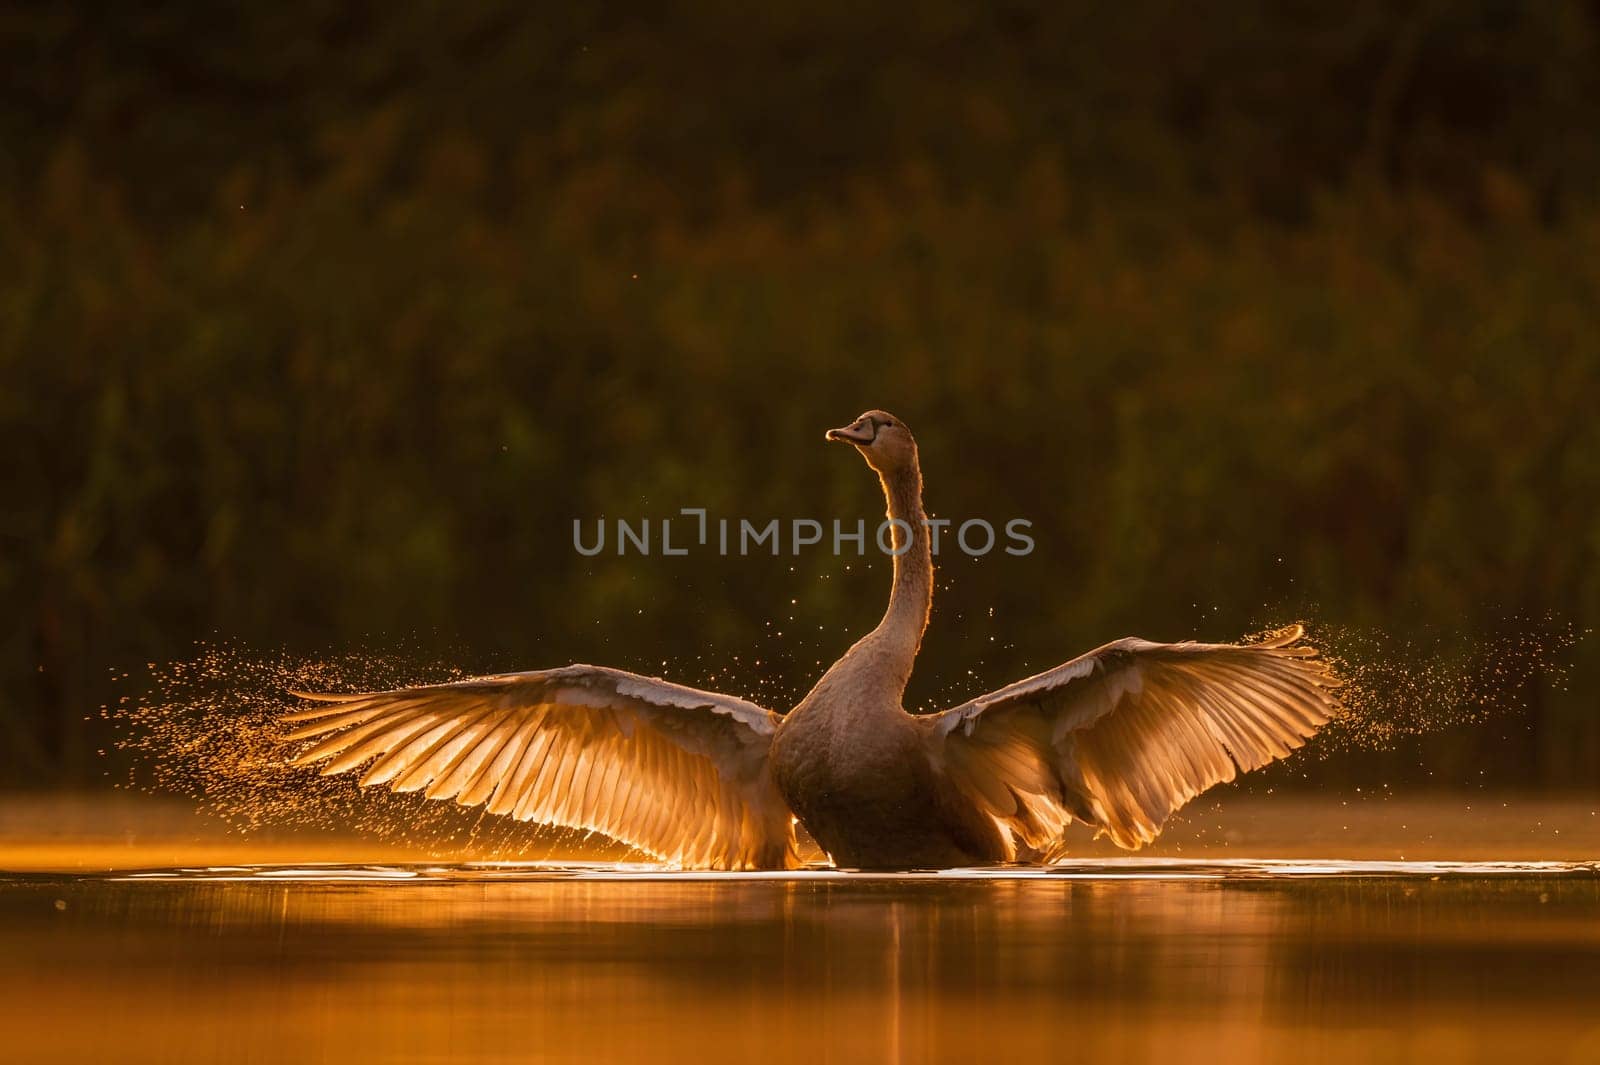 Mute swan preparing for flight at sunset, beautiful orange scenery.Wildlife photo!